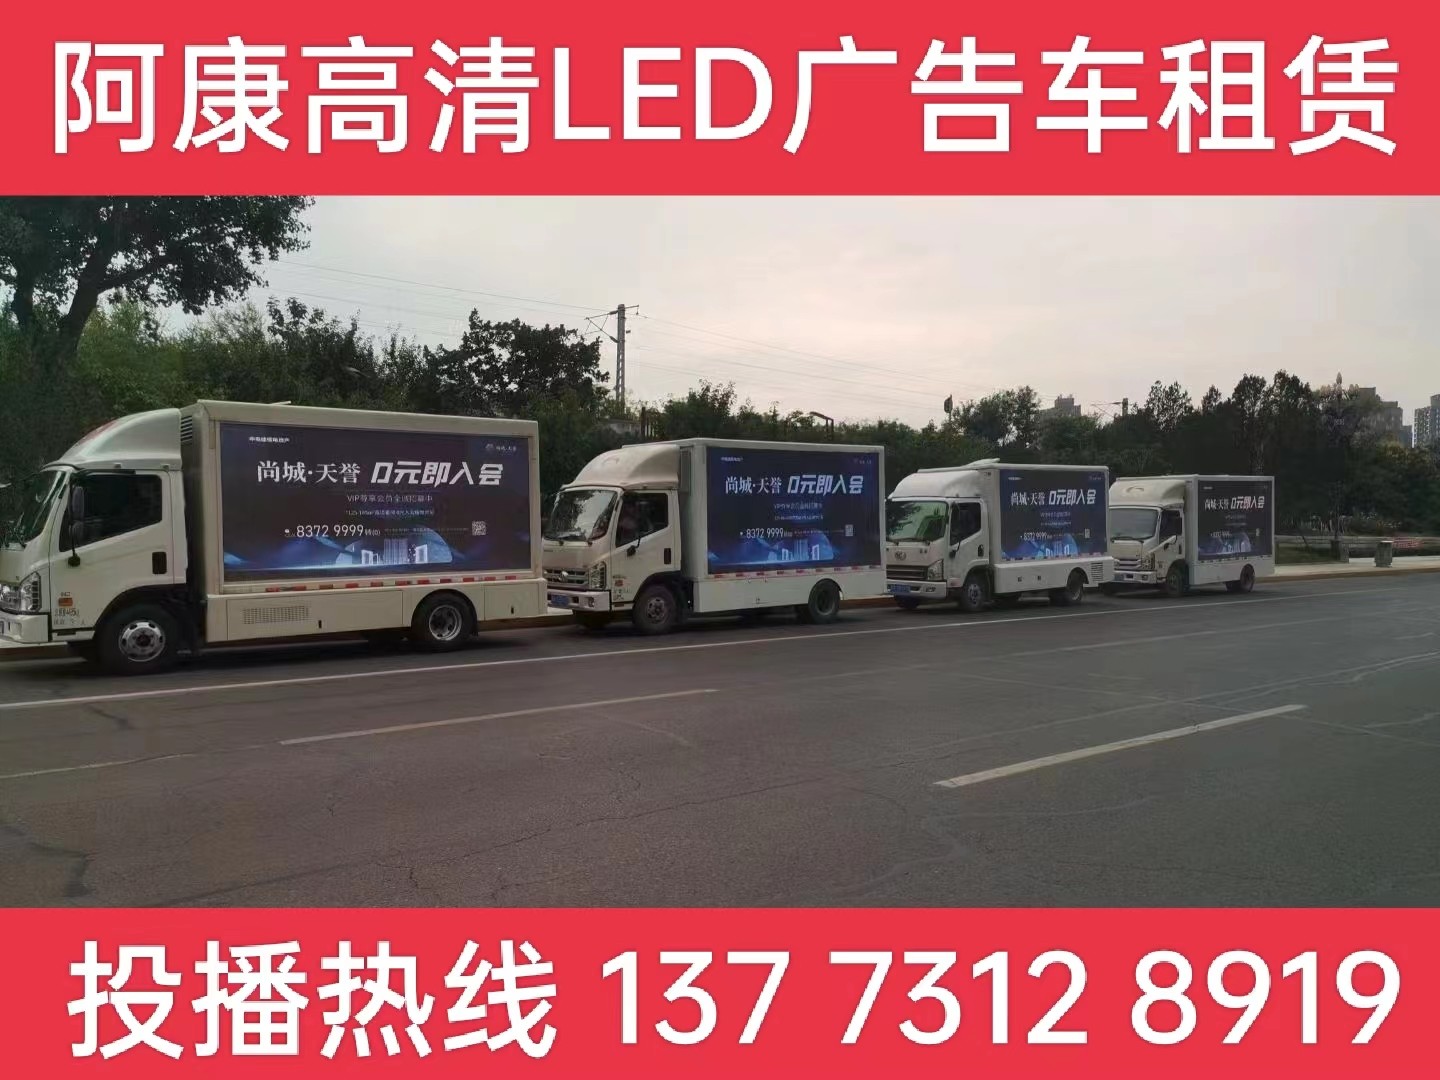 镇江LED广告车出租公司